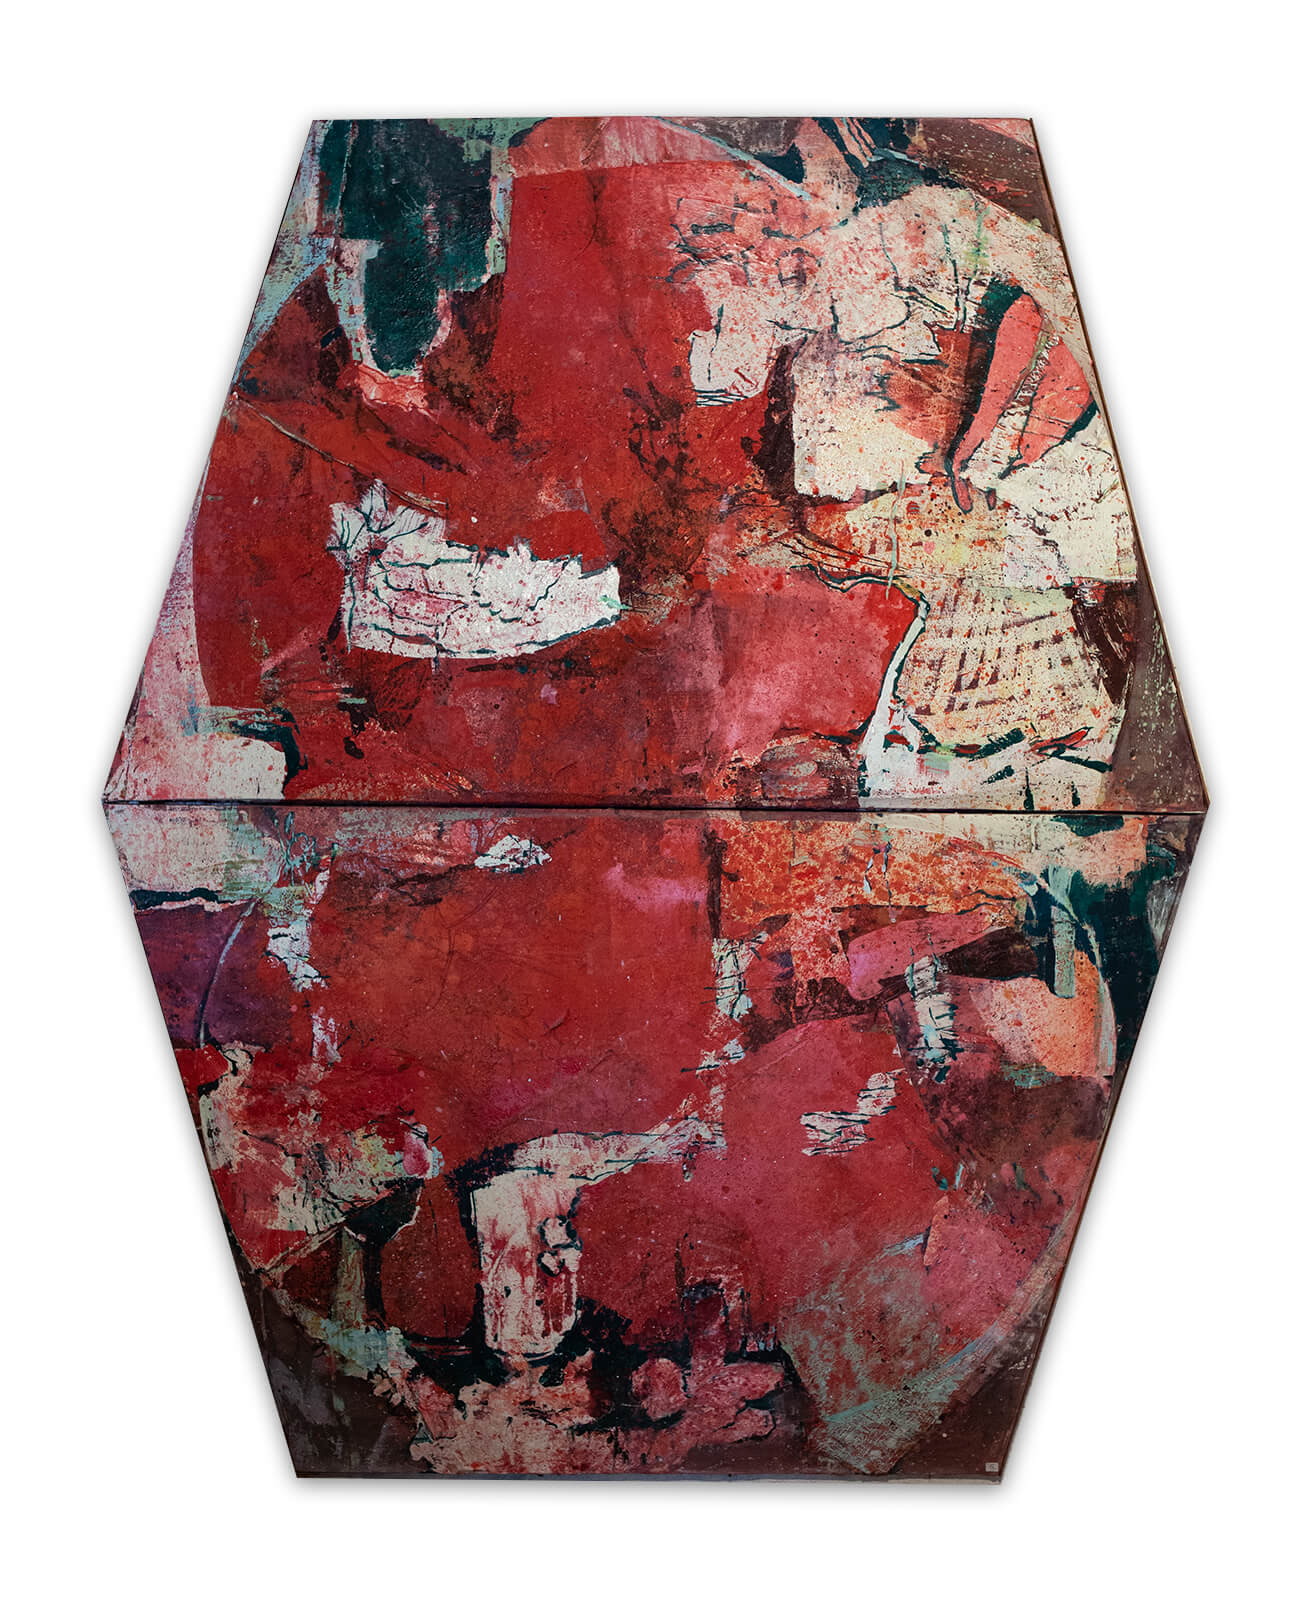 Rood gebeuren - peinture à l'huile/acrylique - 1984 - 2.40m x 1.93m